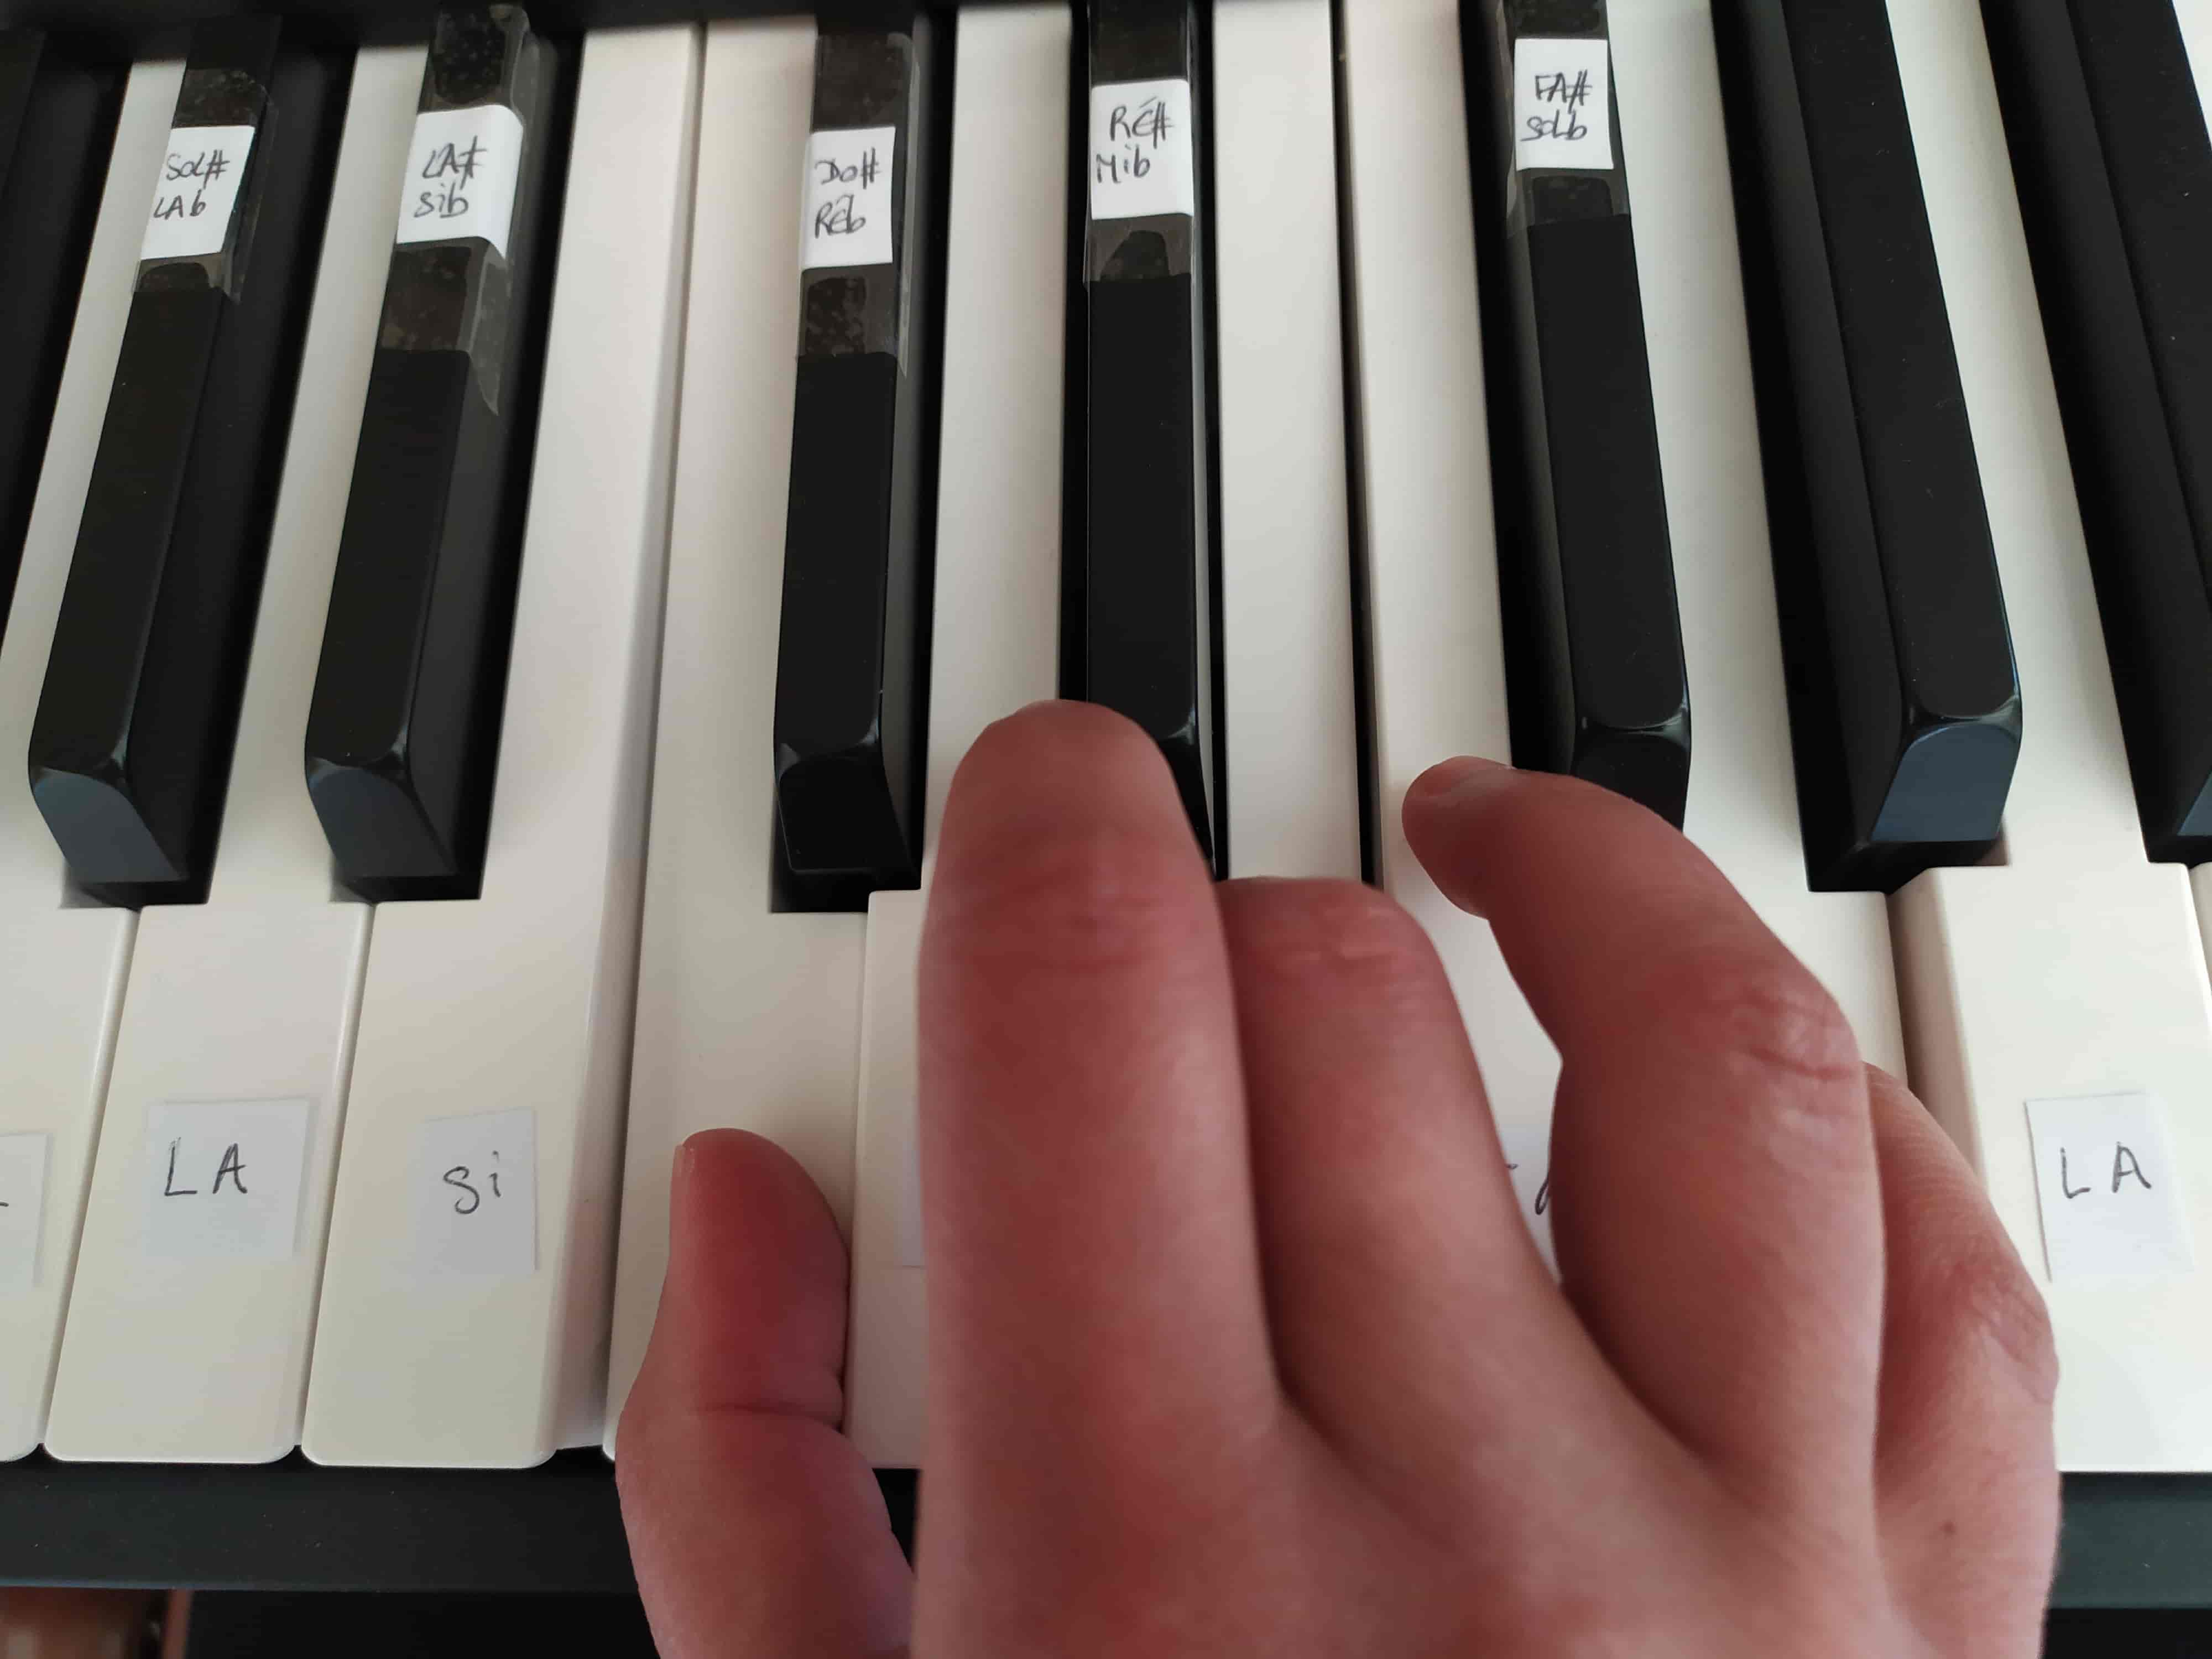 Autocollants piano : bonne ou mauvaise idée pour se repérer sur